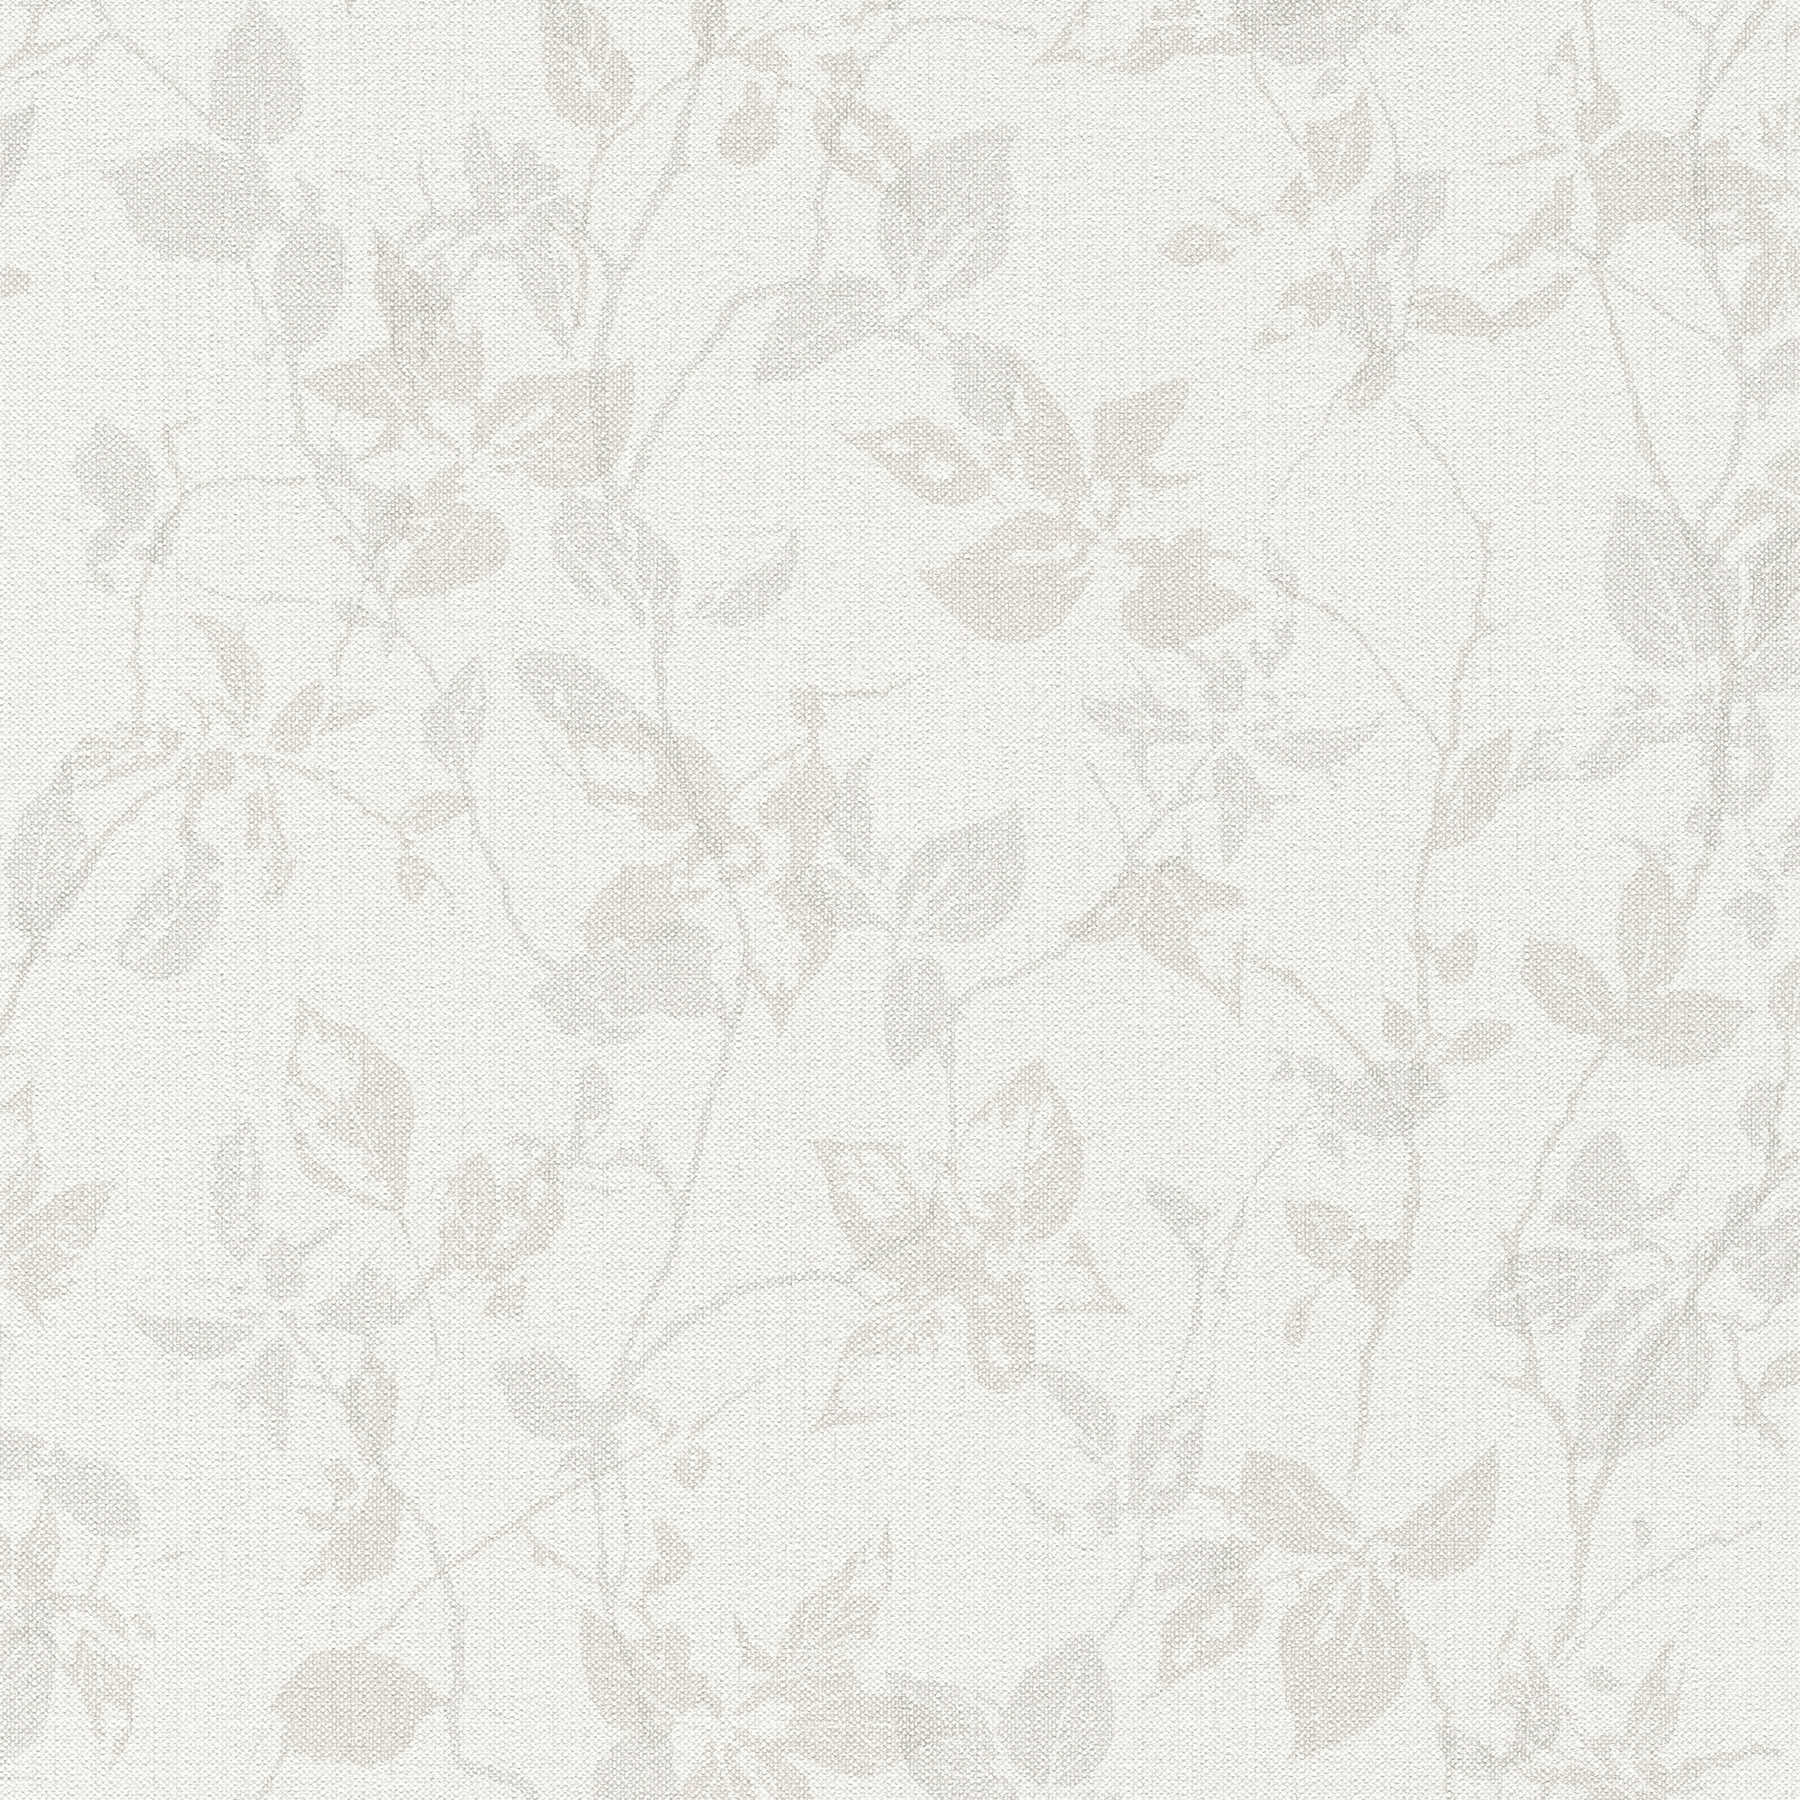 Wallpaper with leaf motif & linen look - beige, grey
